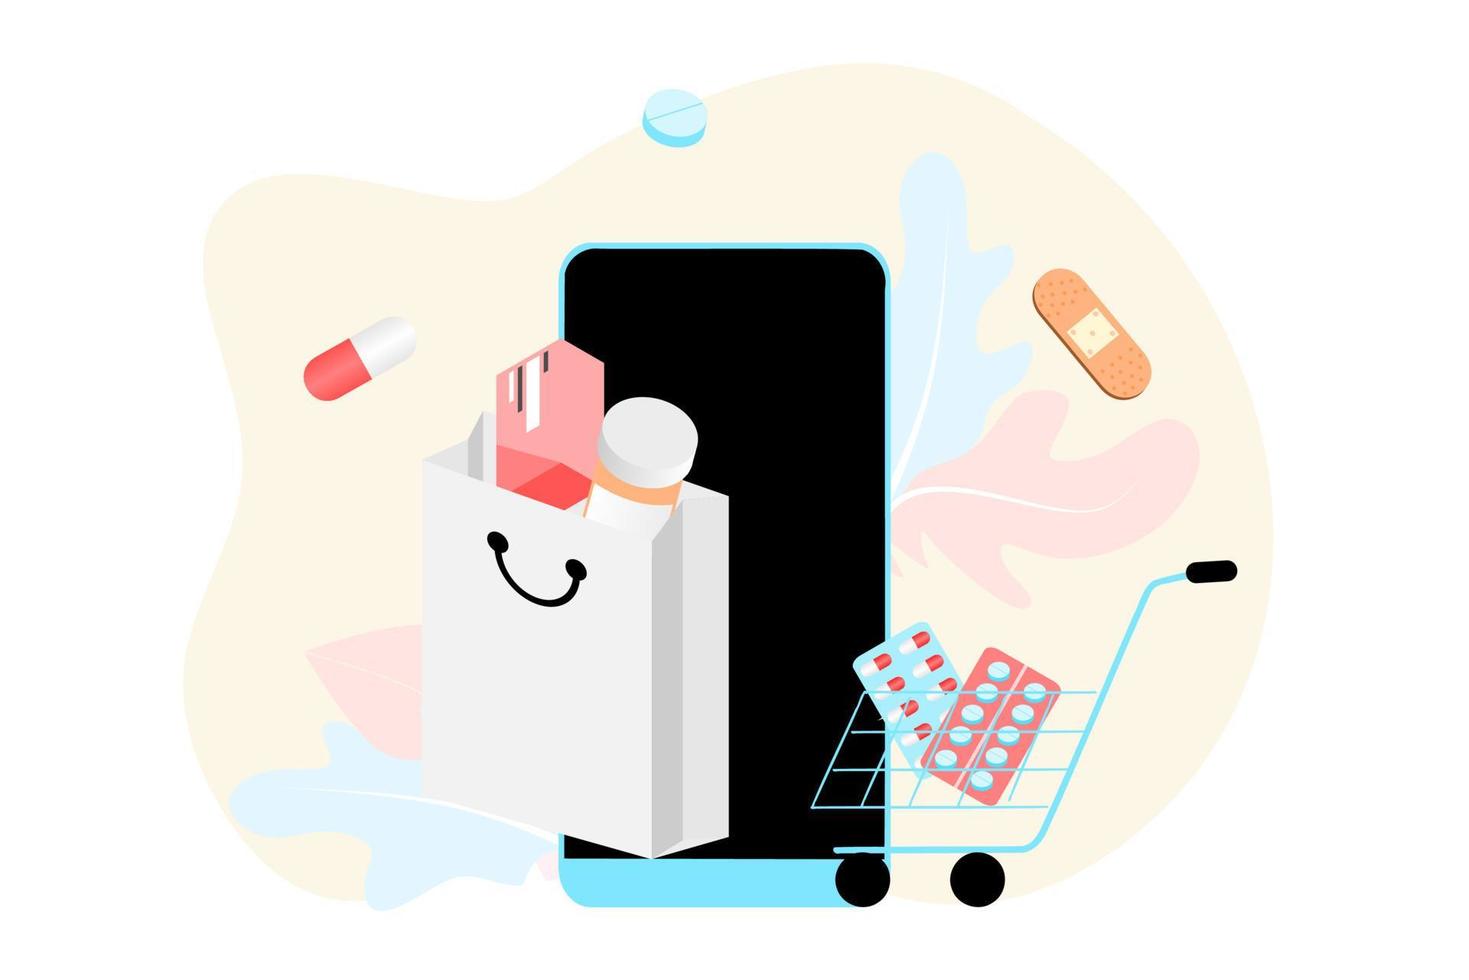 online apotheek app concept van gezondheidszorg, drogisterij en e-commerce. vectorillustratie van geneesmiddelen op recept, EHBO-kit en medische benodigdheden die online worden verkocht via web- of computertechnologie. vector